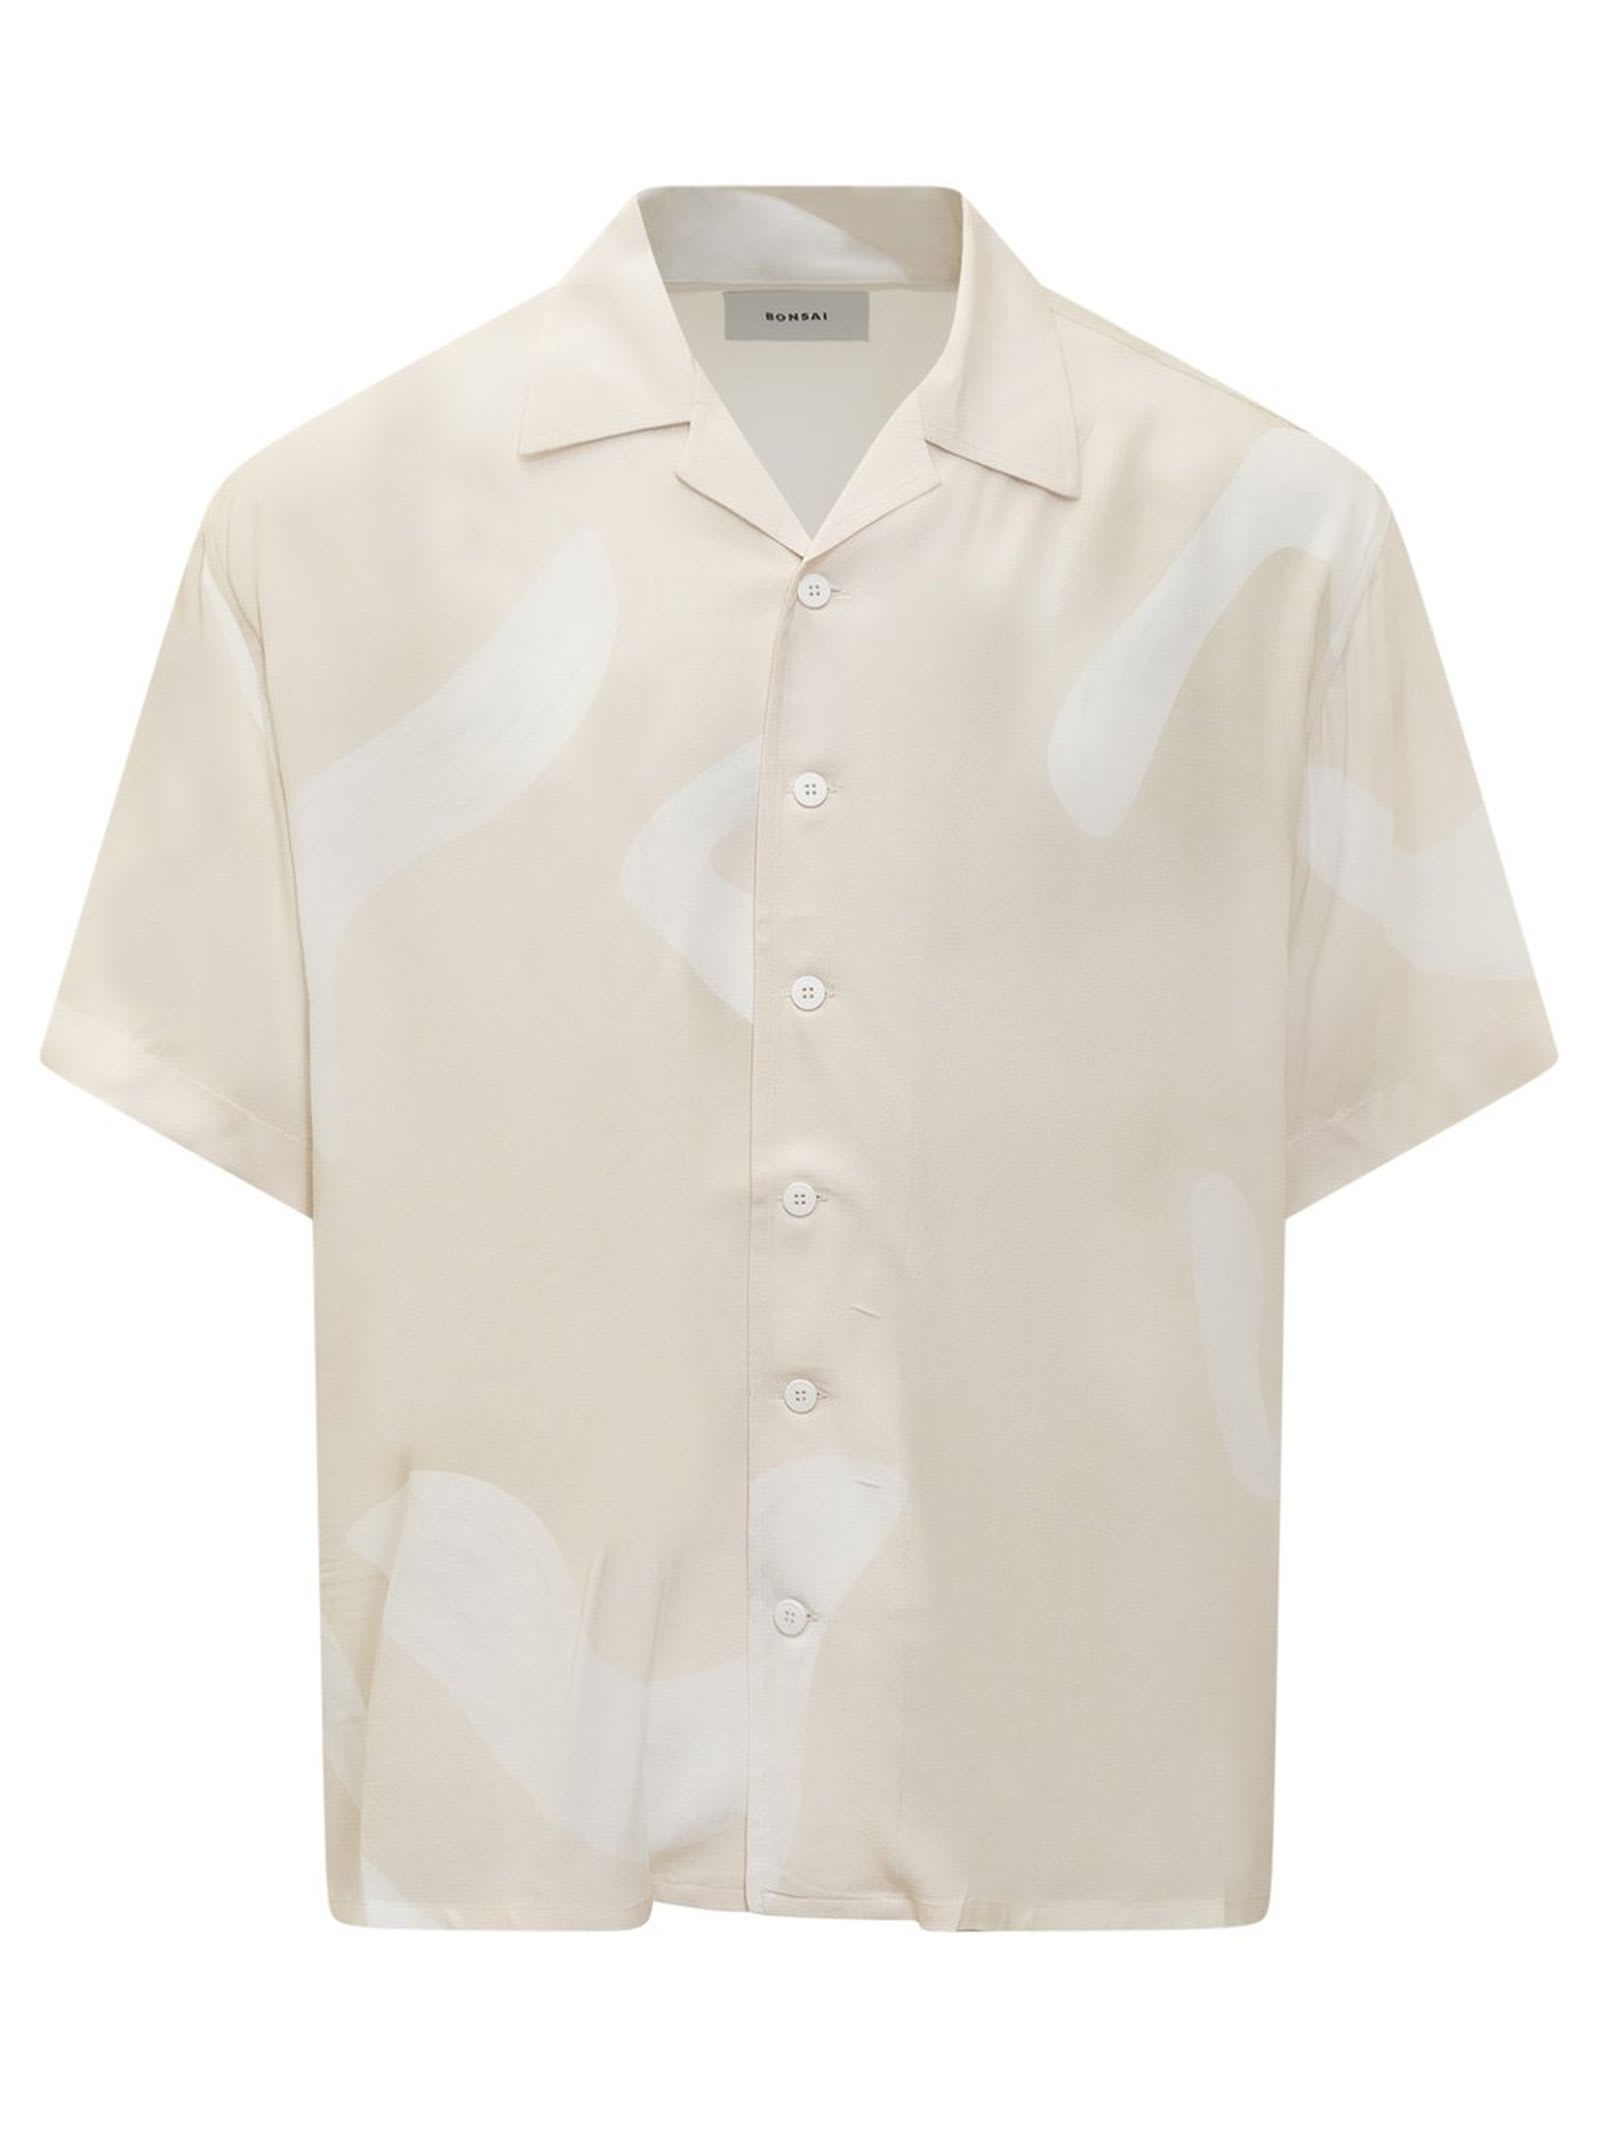 Bonsai Ivory White Cotton Shirt